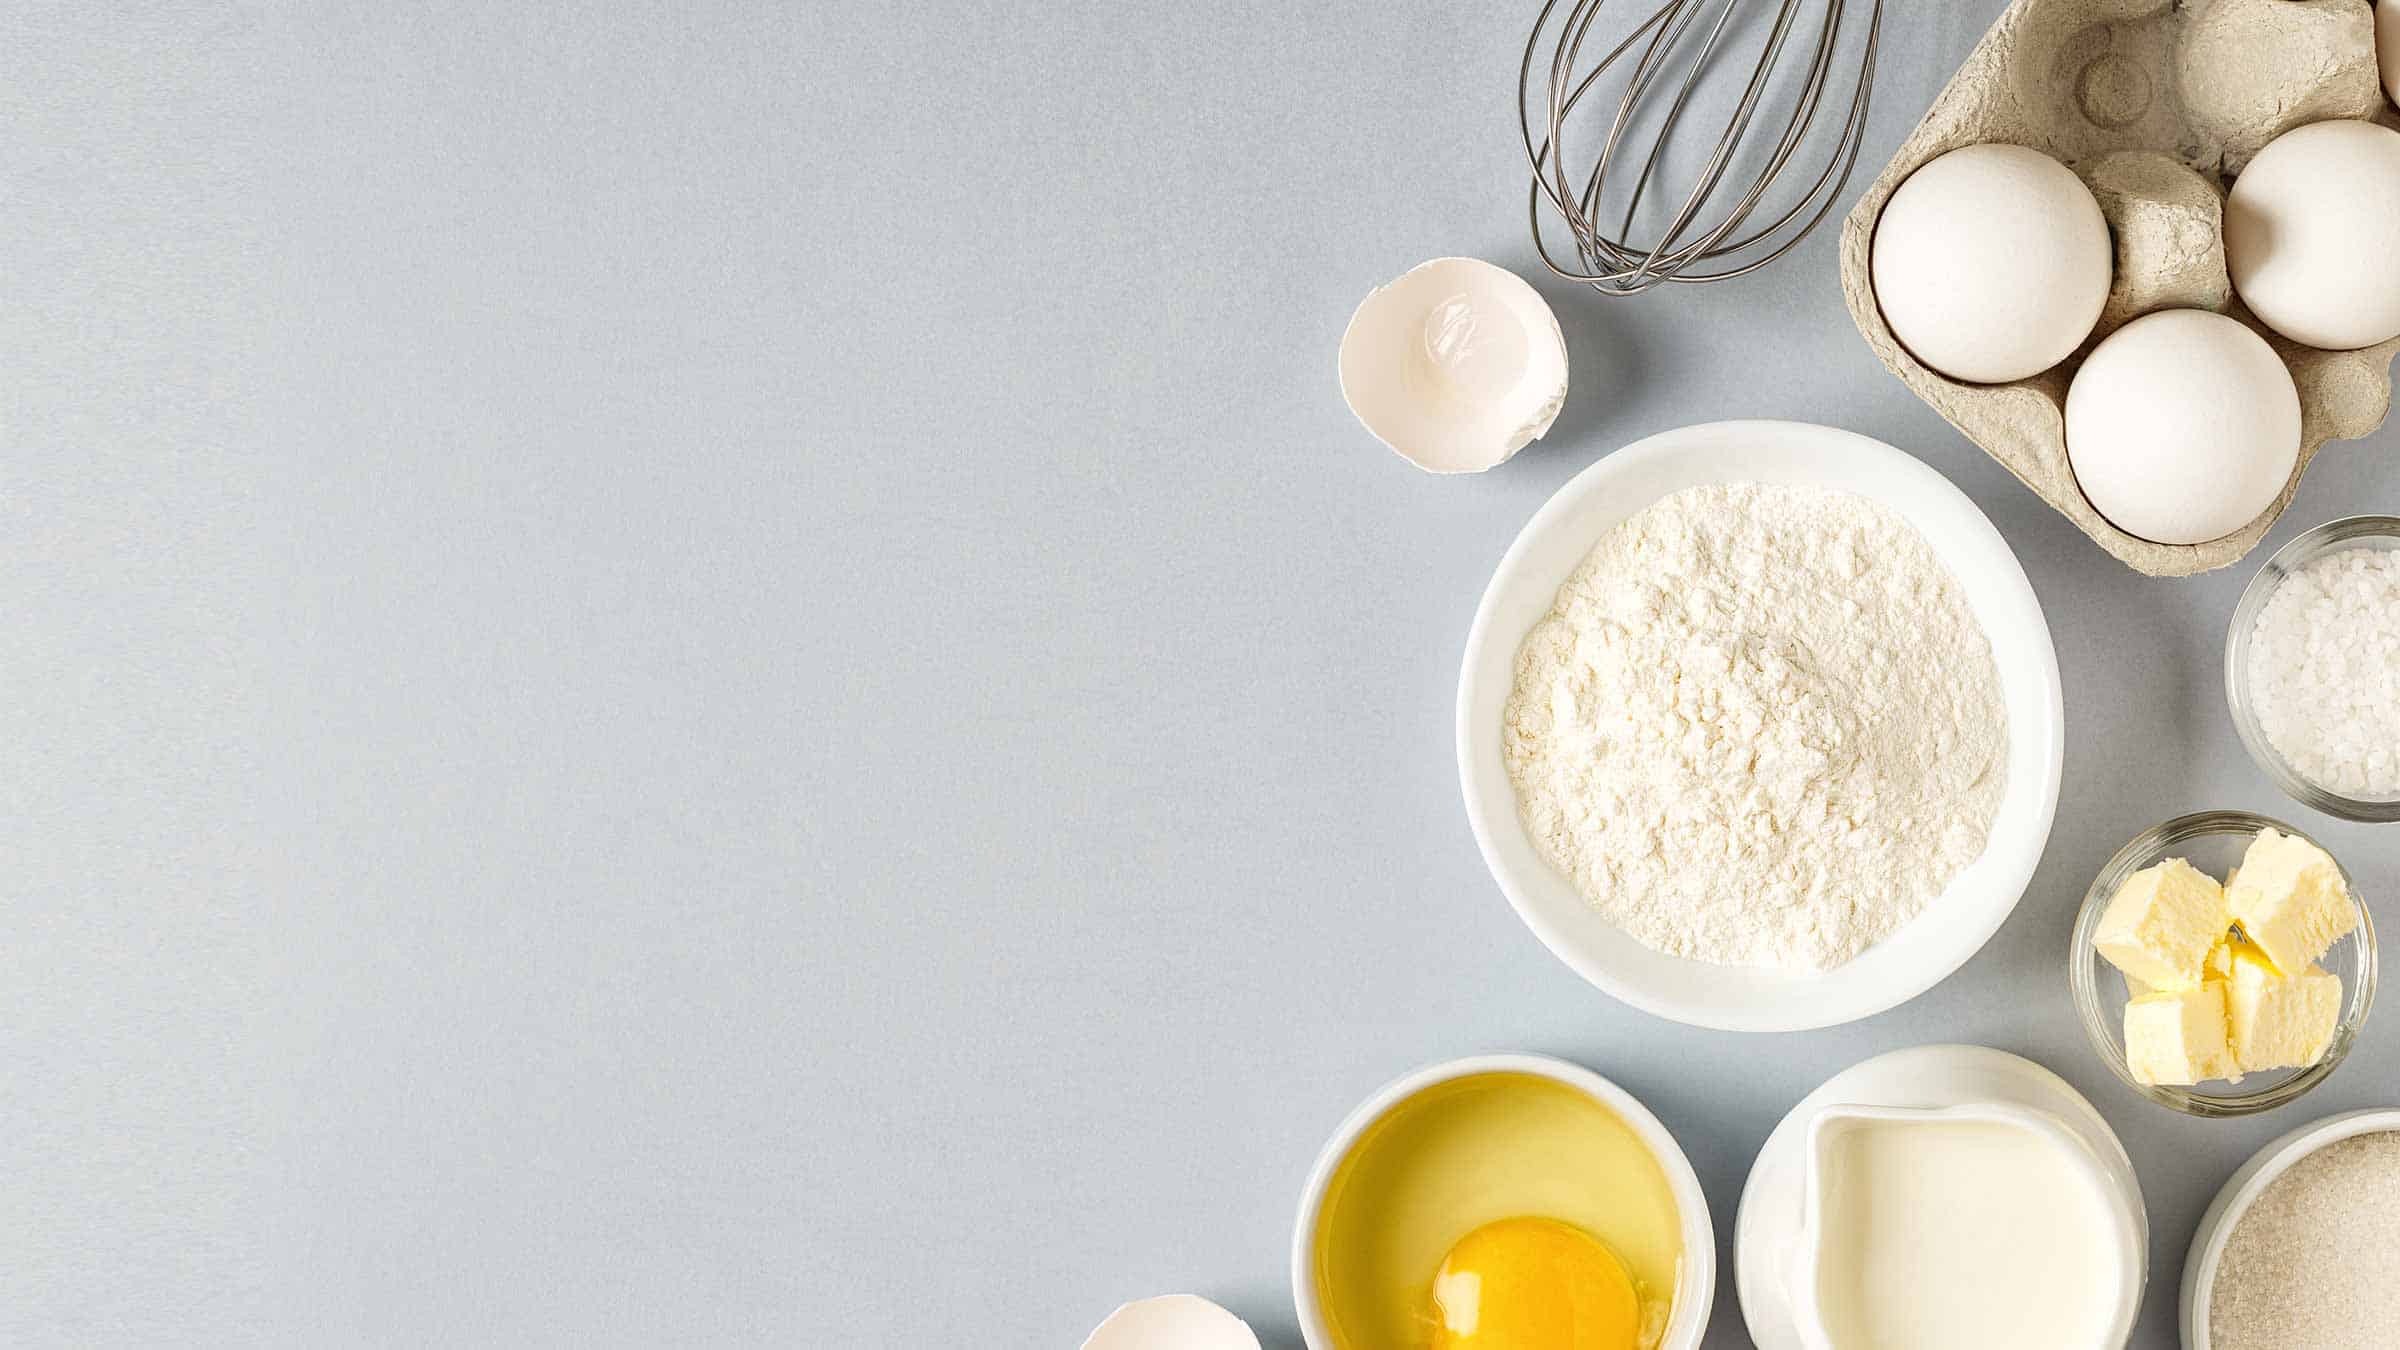 The Science Behind Baking Ingredients